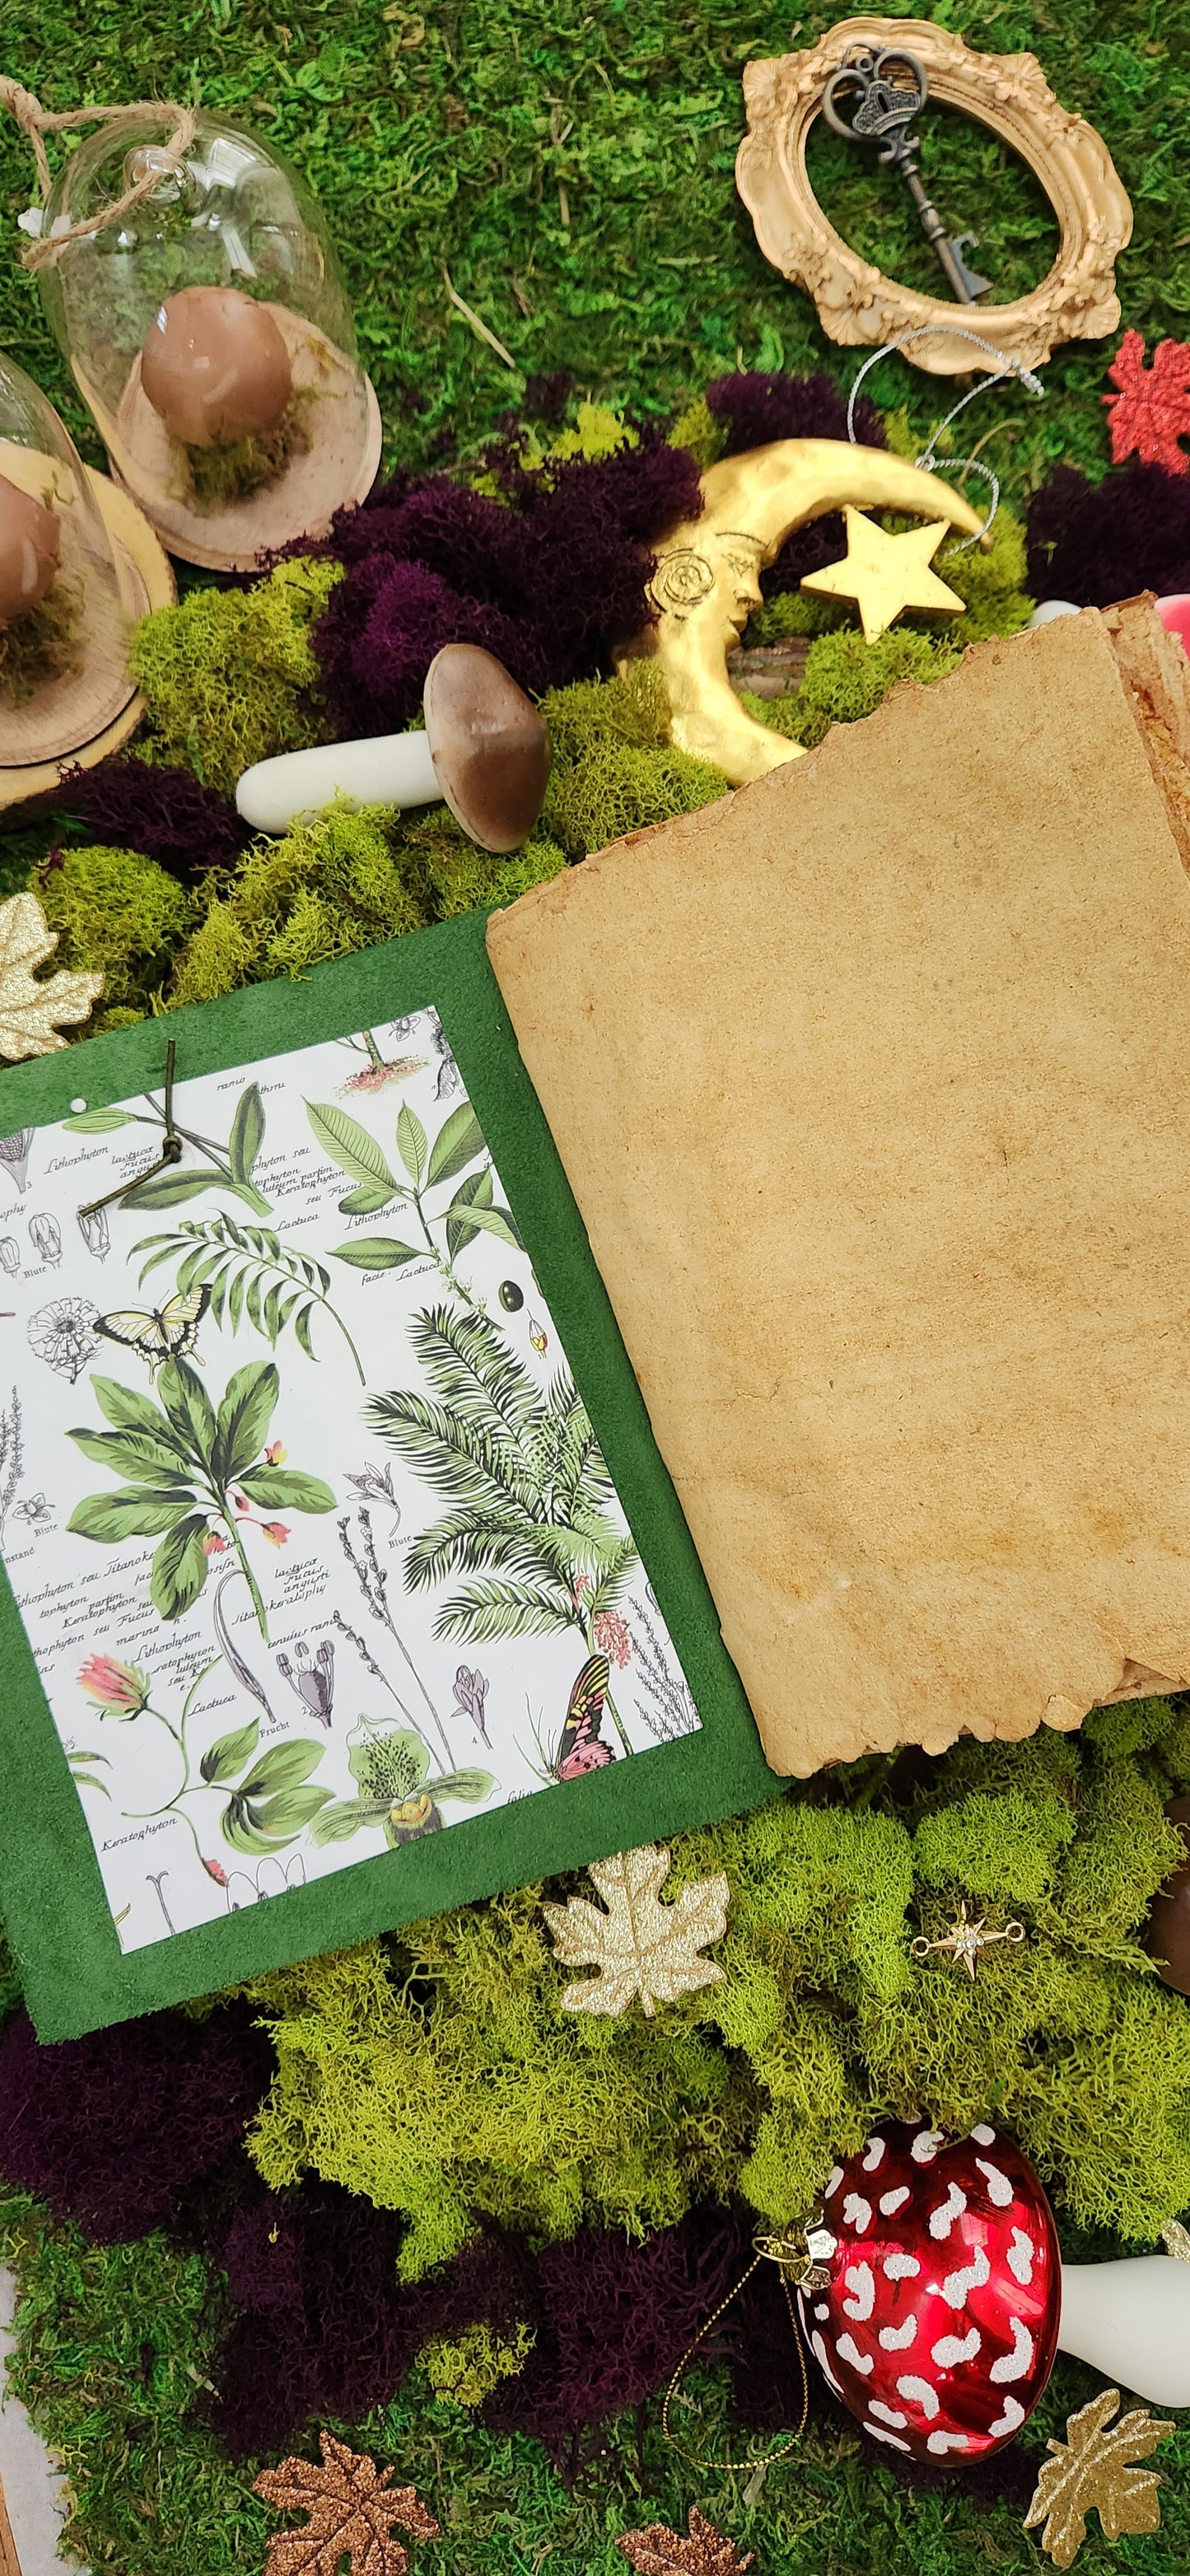 The Botanist Plant leather journal sketchbook